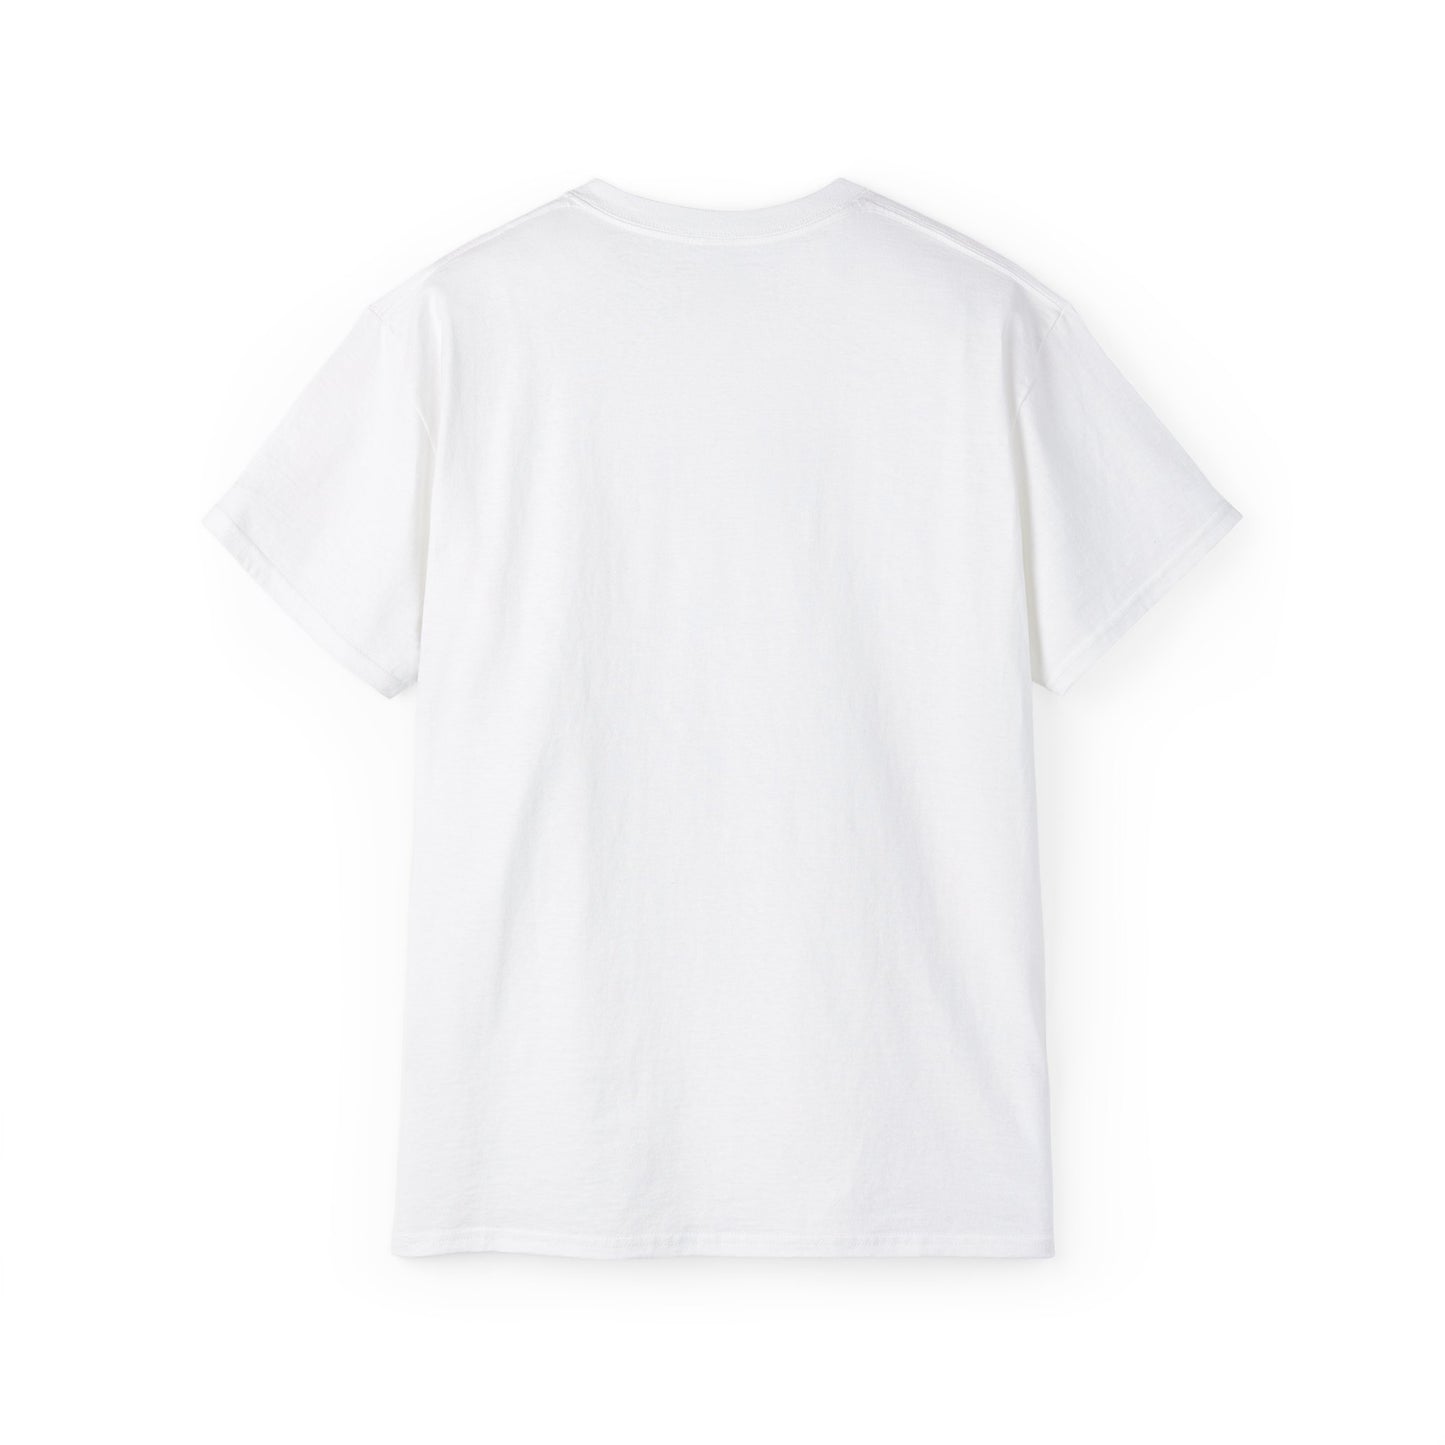 The Running Game - Unisex T-Shirt